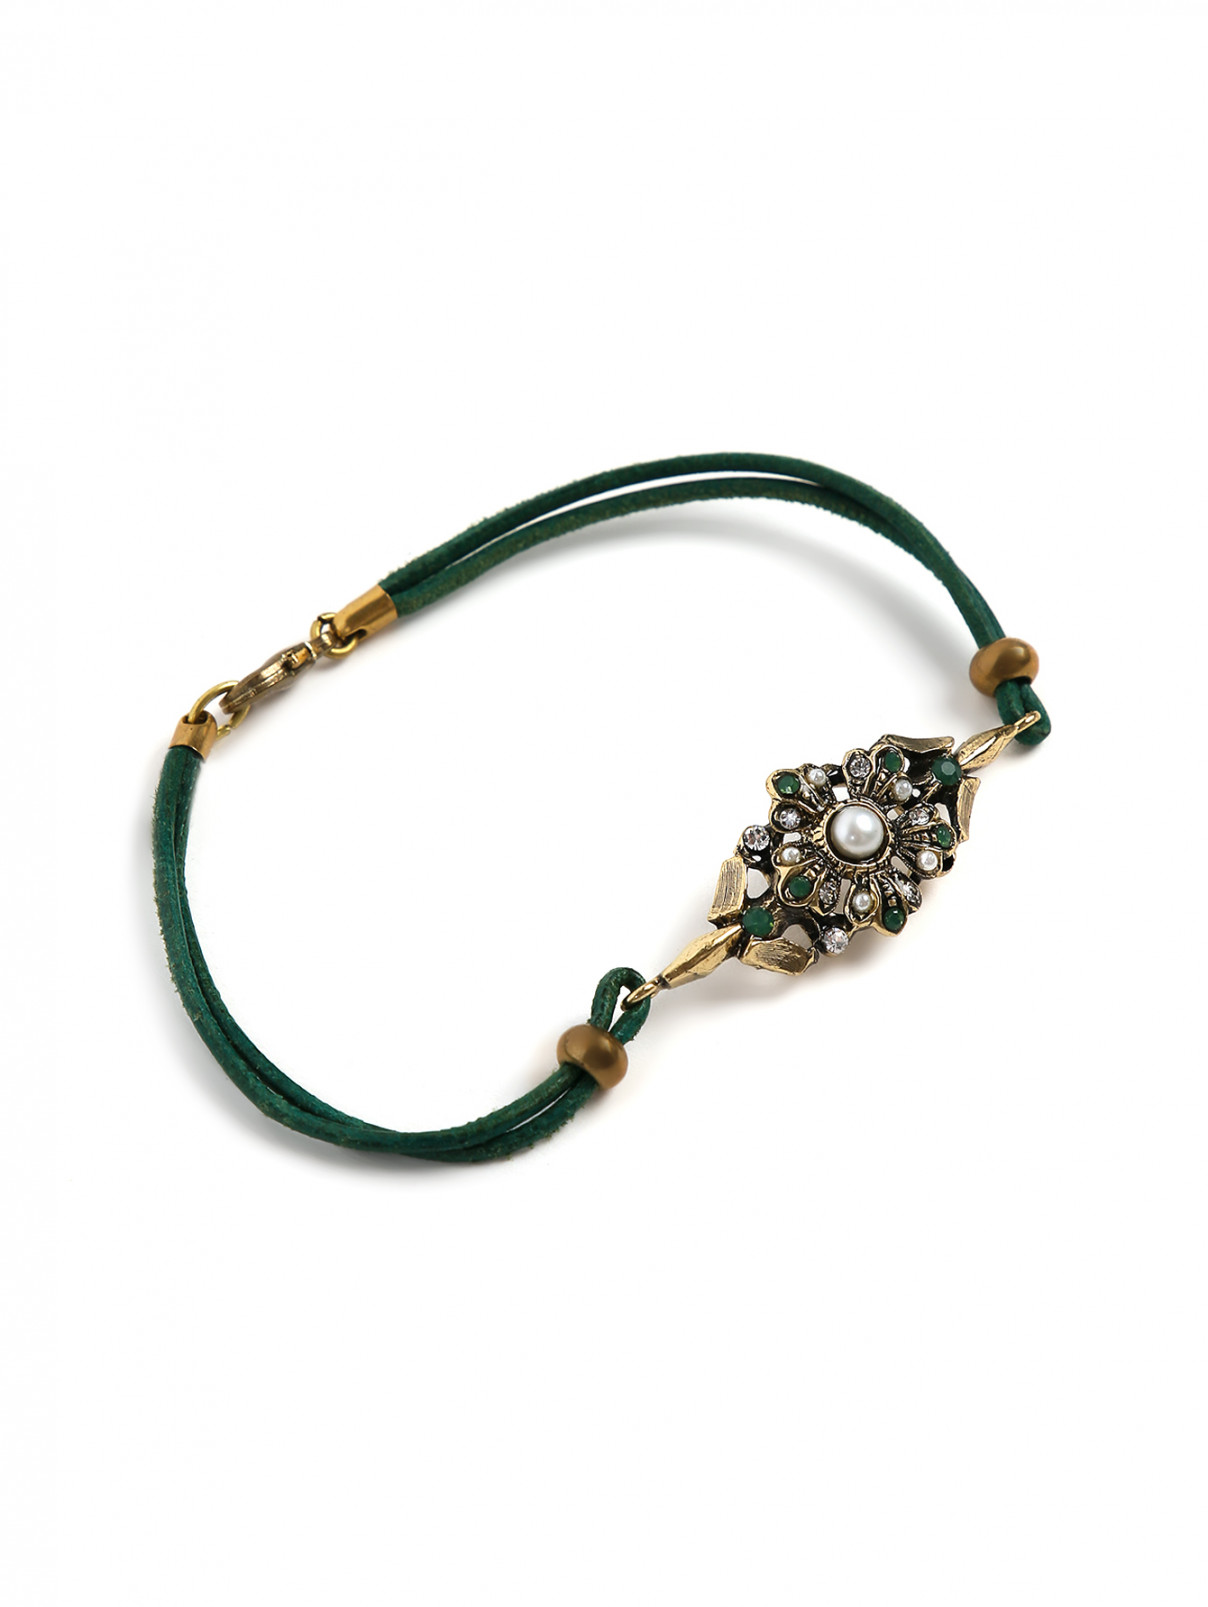 Браслет декорированный камнями и кристаллами Look&Took  –  Общий вид  – Цвет:  Зеленый